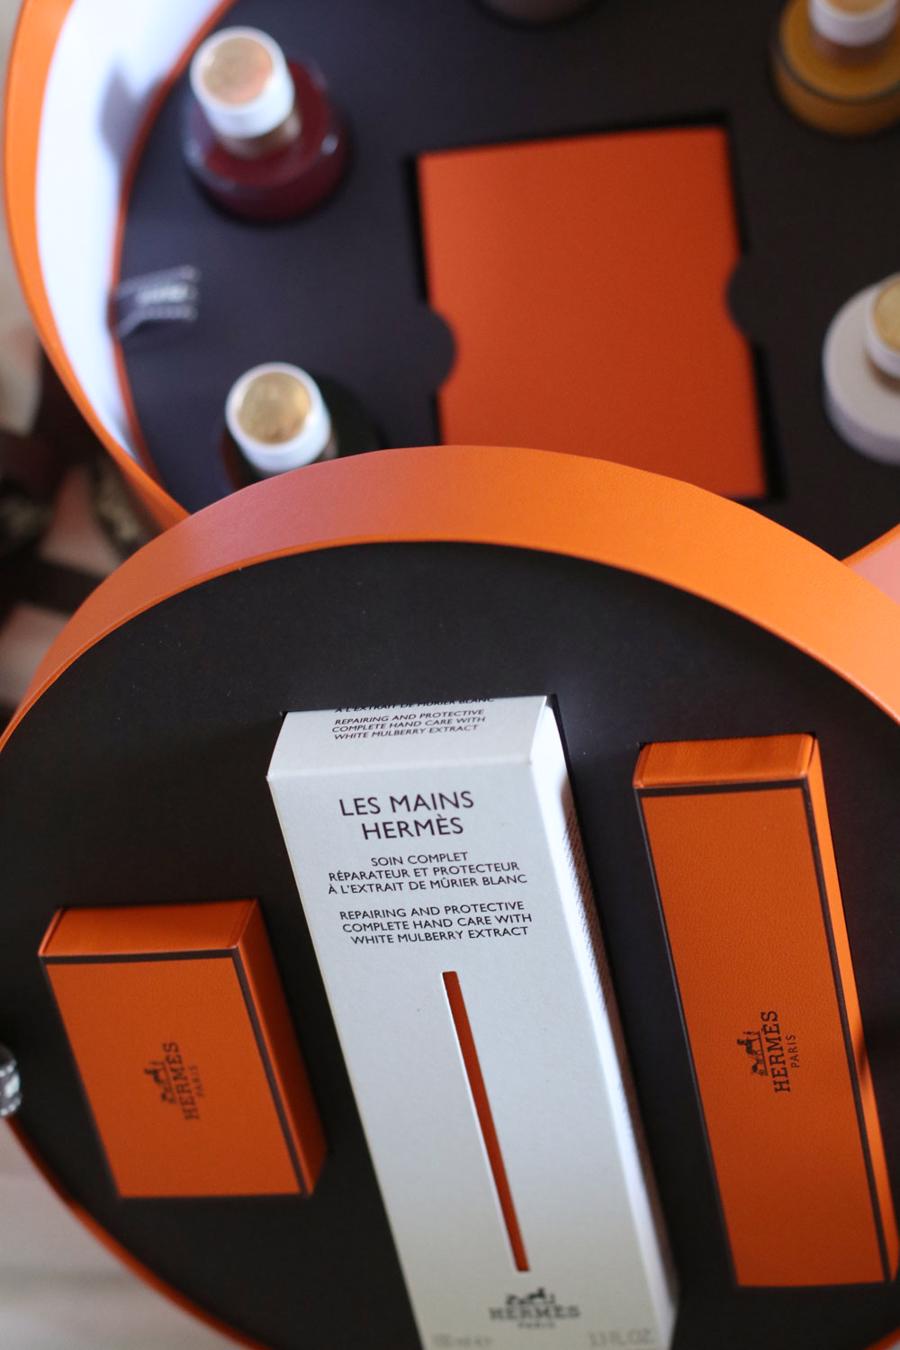 Bộ mỹ phẩm Les Mains Hermès dành riêng cho đôi tay - Ảnh 6